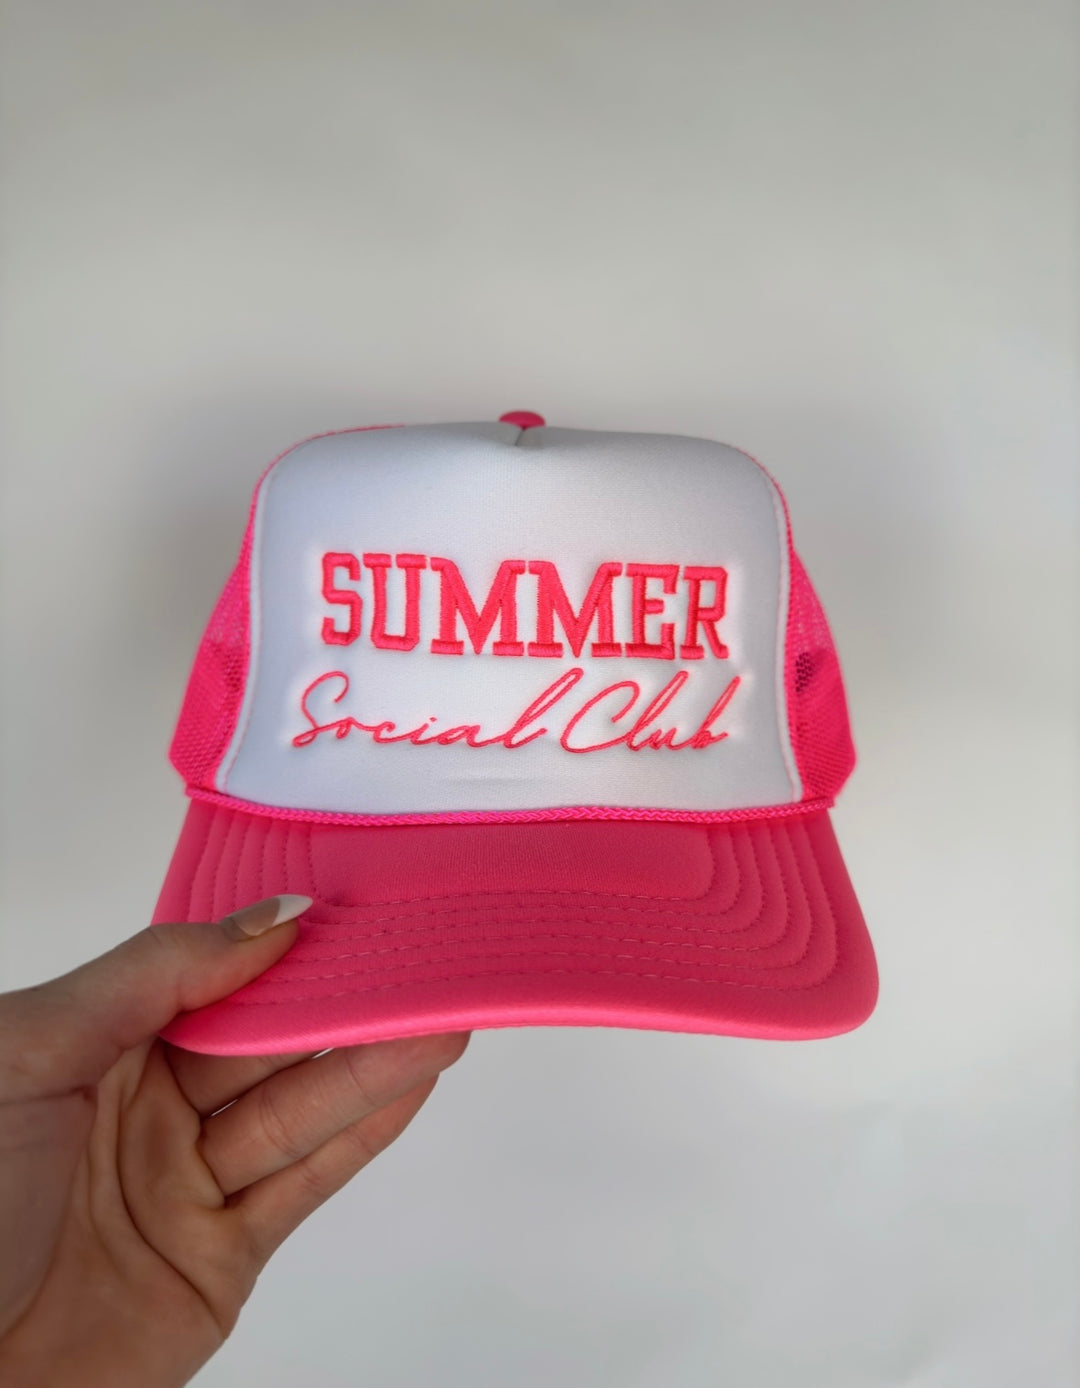 Summer Social Club Trucker Hat - Hot Pink